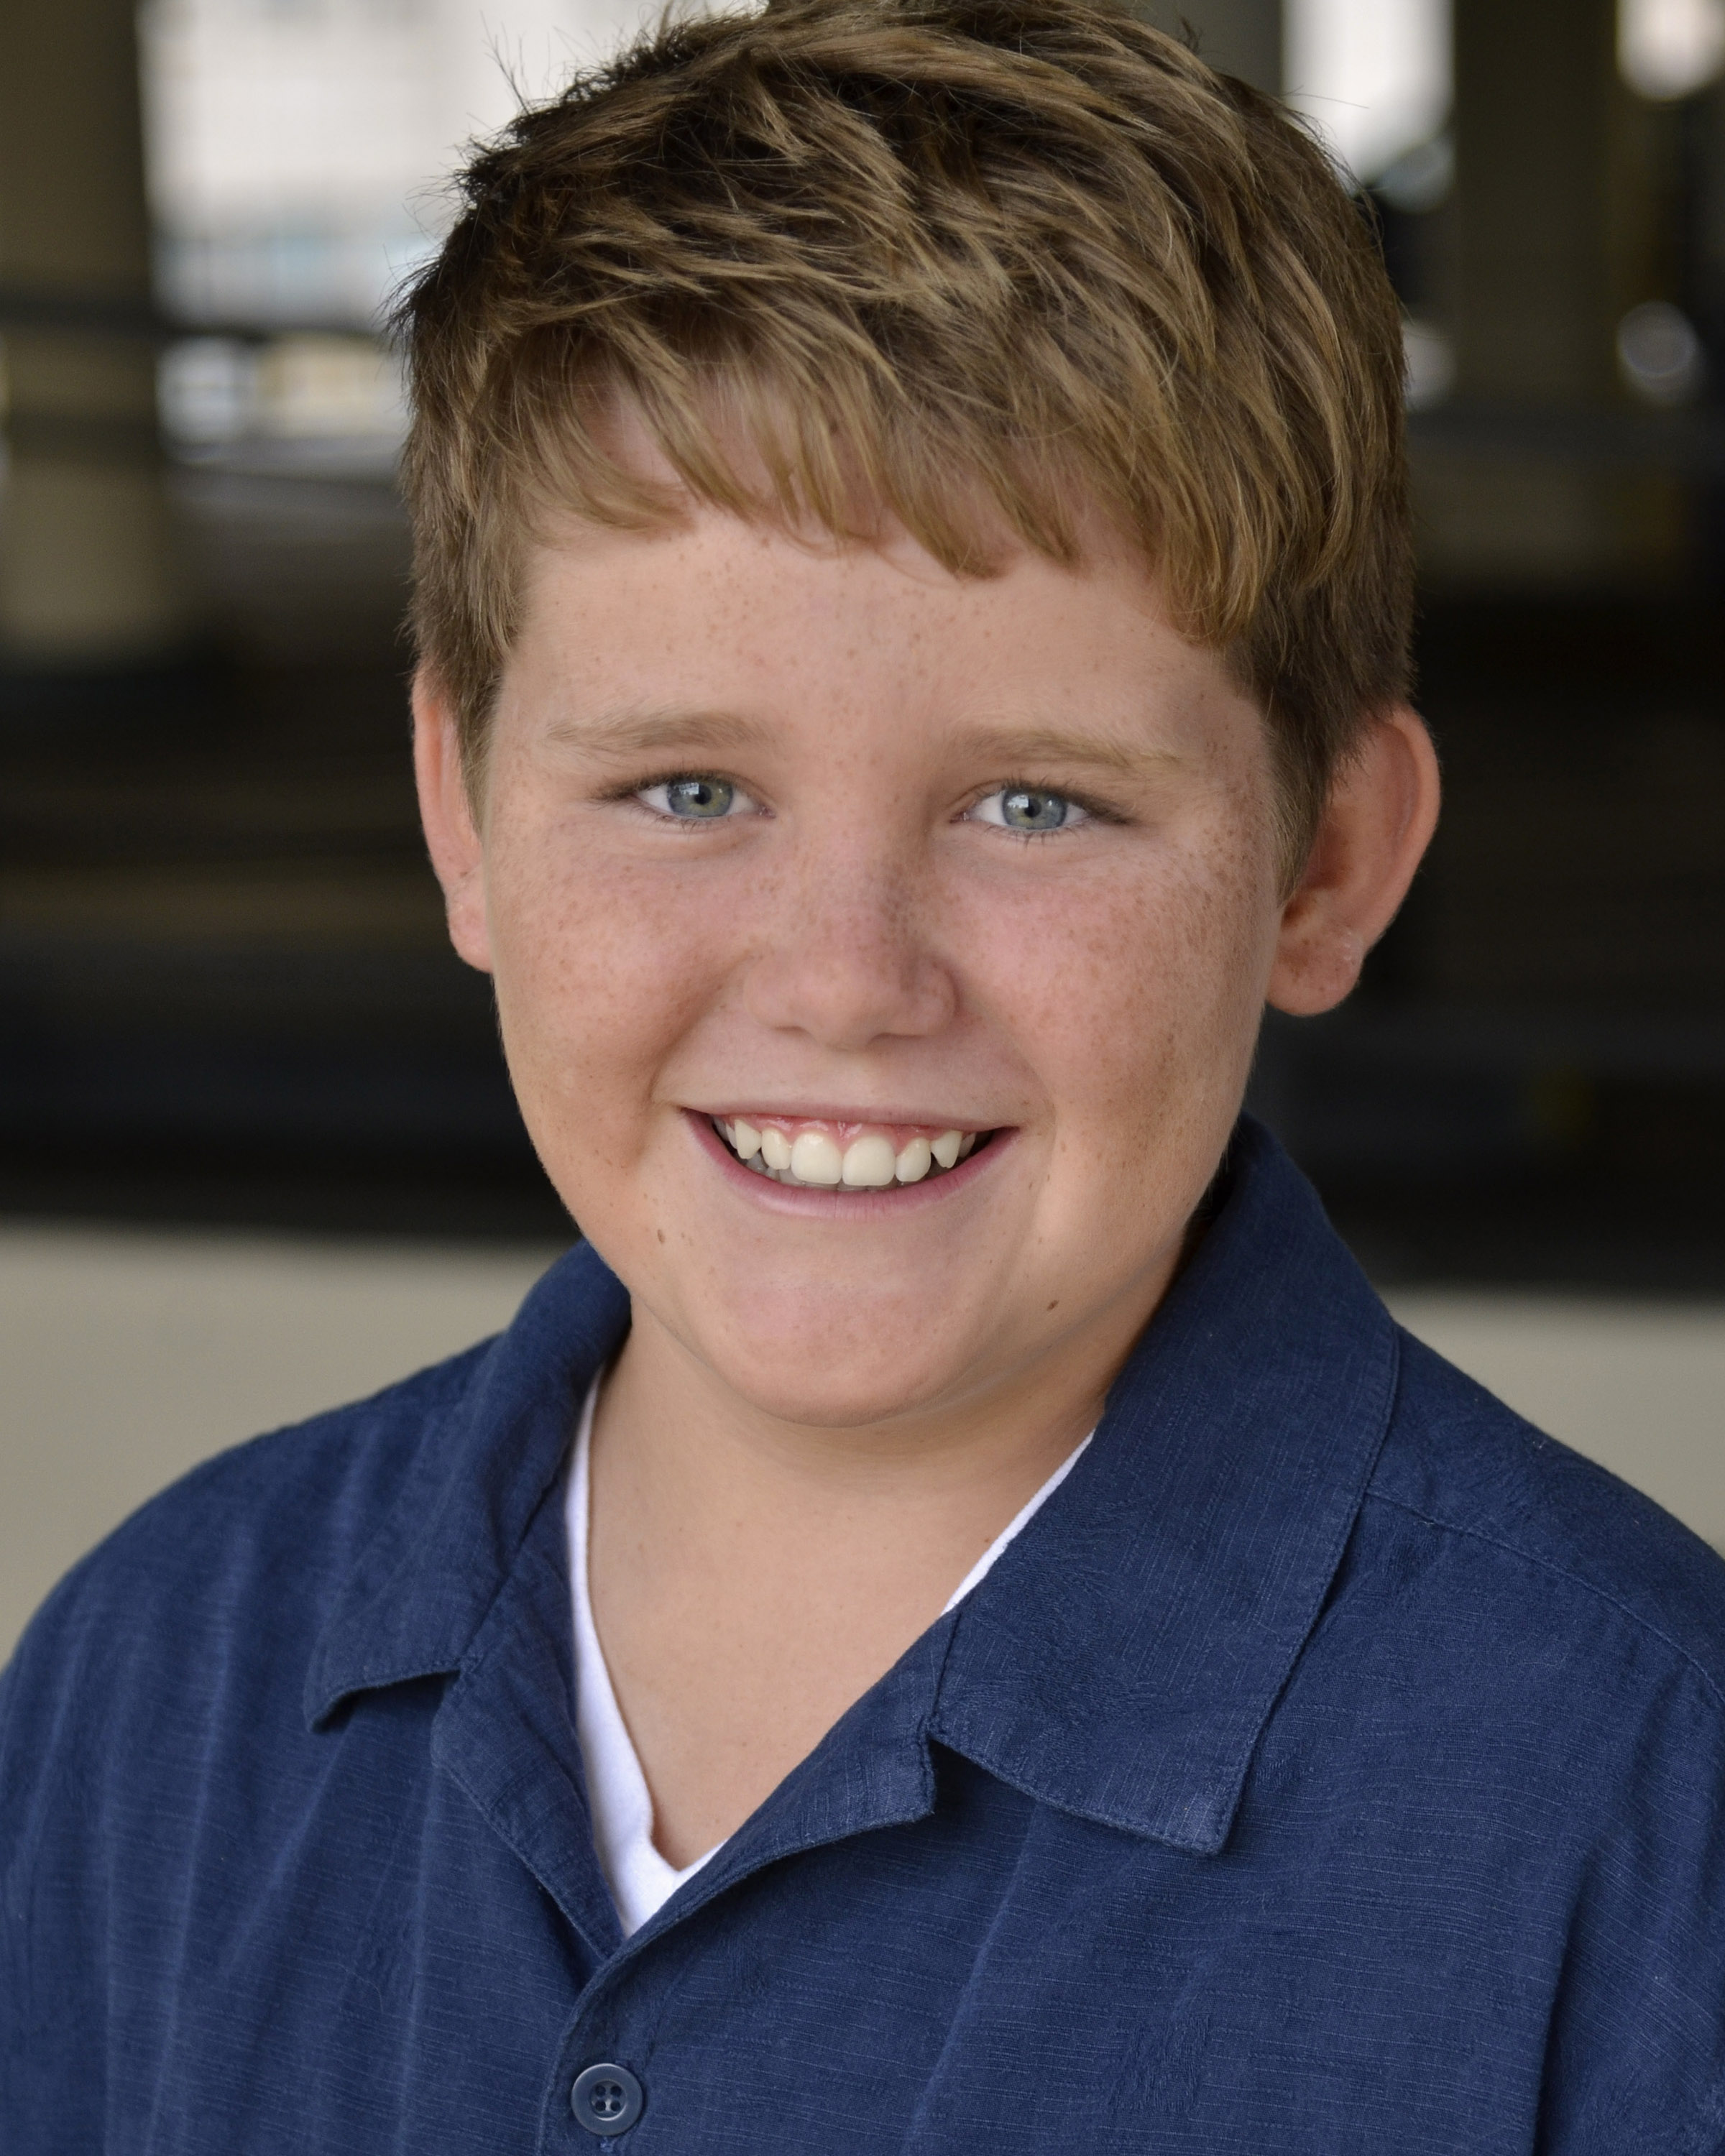 Improv Natural, Funny and adaptable Kid, Patrick Hudson (12)